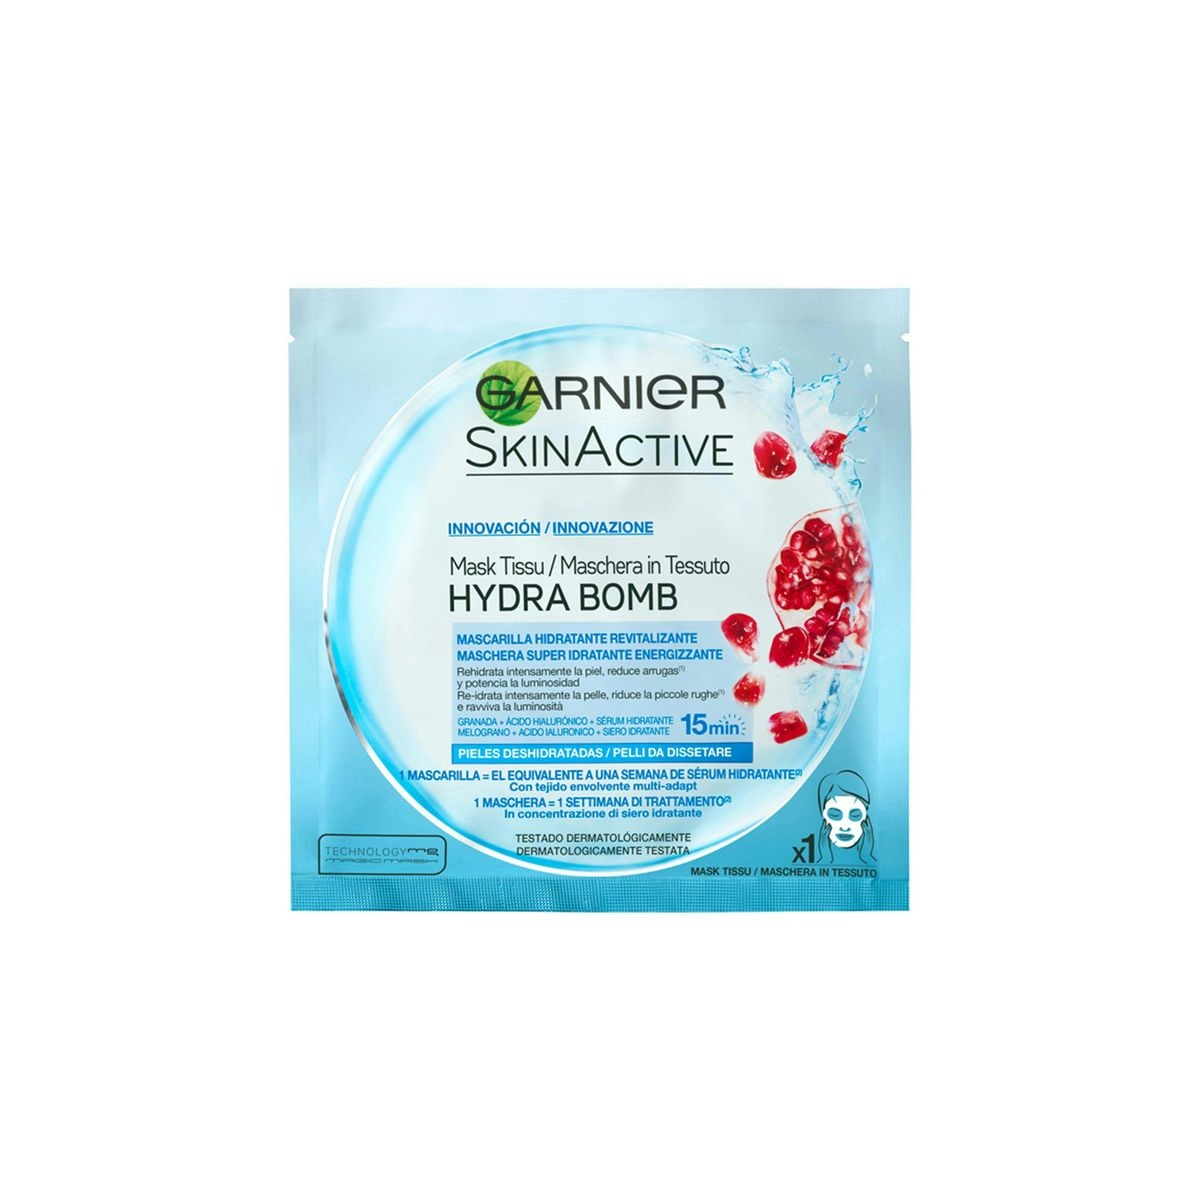 Mascarilla de tela Hydra Bomb hidratante revitalizante con ácido hialurónico y granada antioxidante GARNIER Skin Active